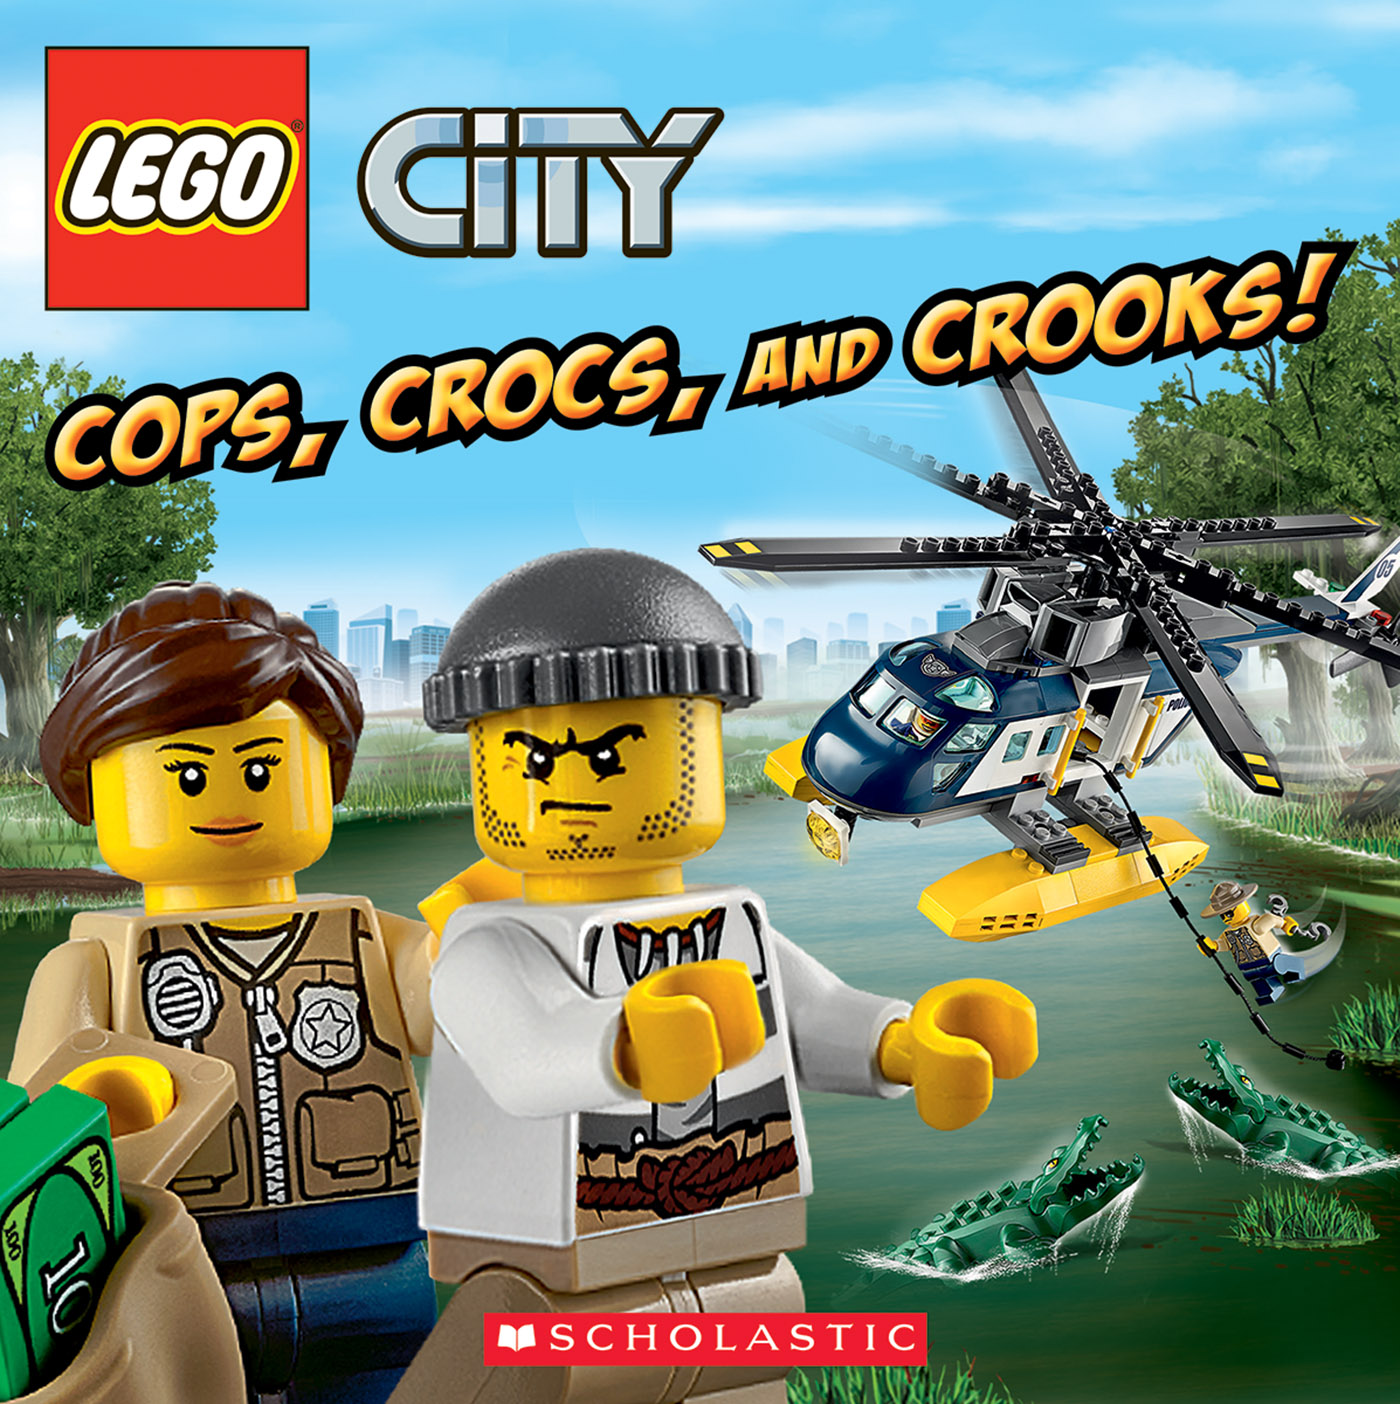 Cops, Crocs, and Crooks! (LEGO City)